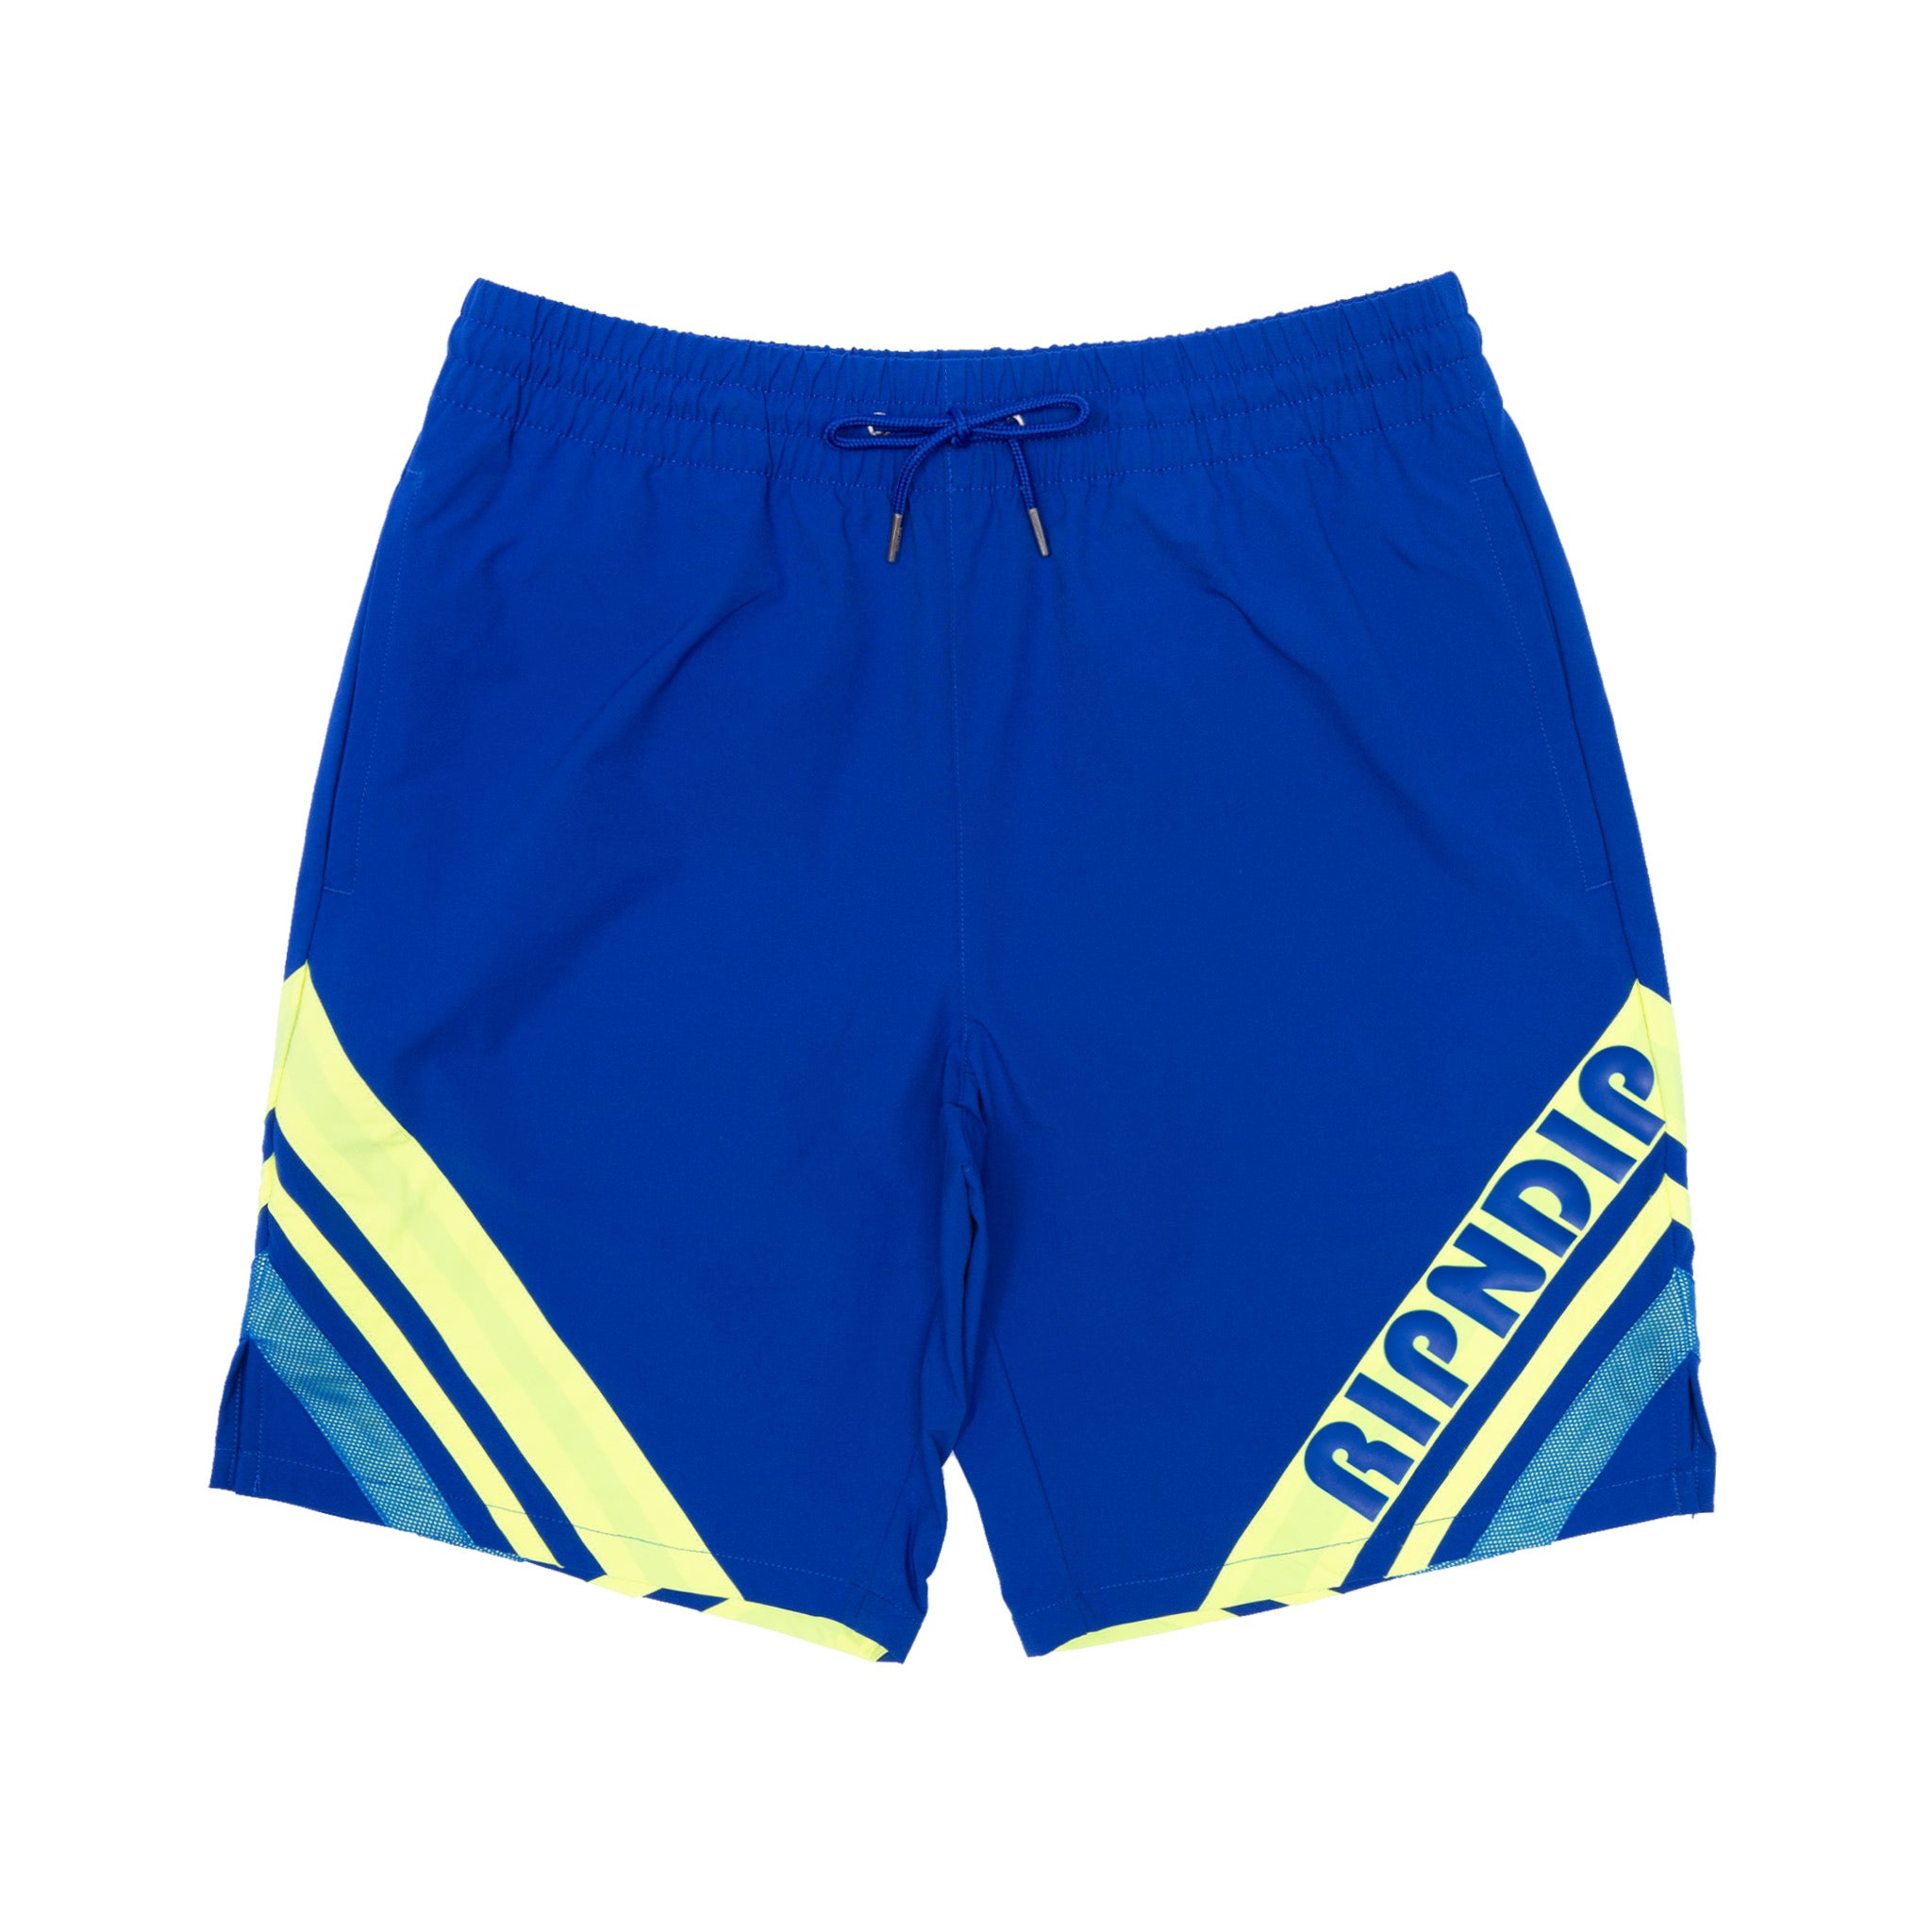 Baja Swim Shorts (Royal Blue) – RIPNDIP